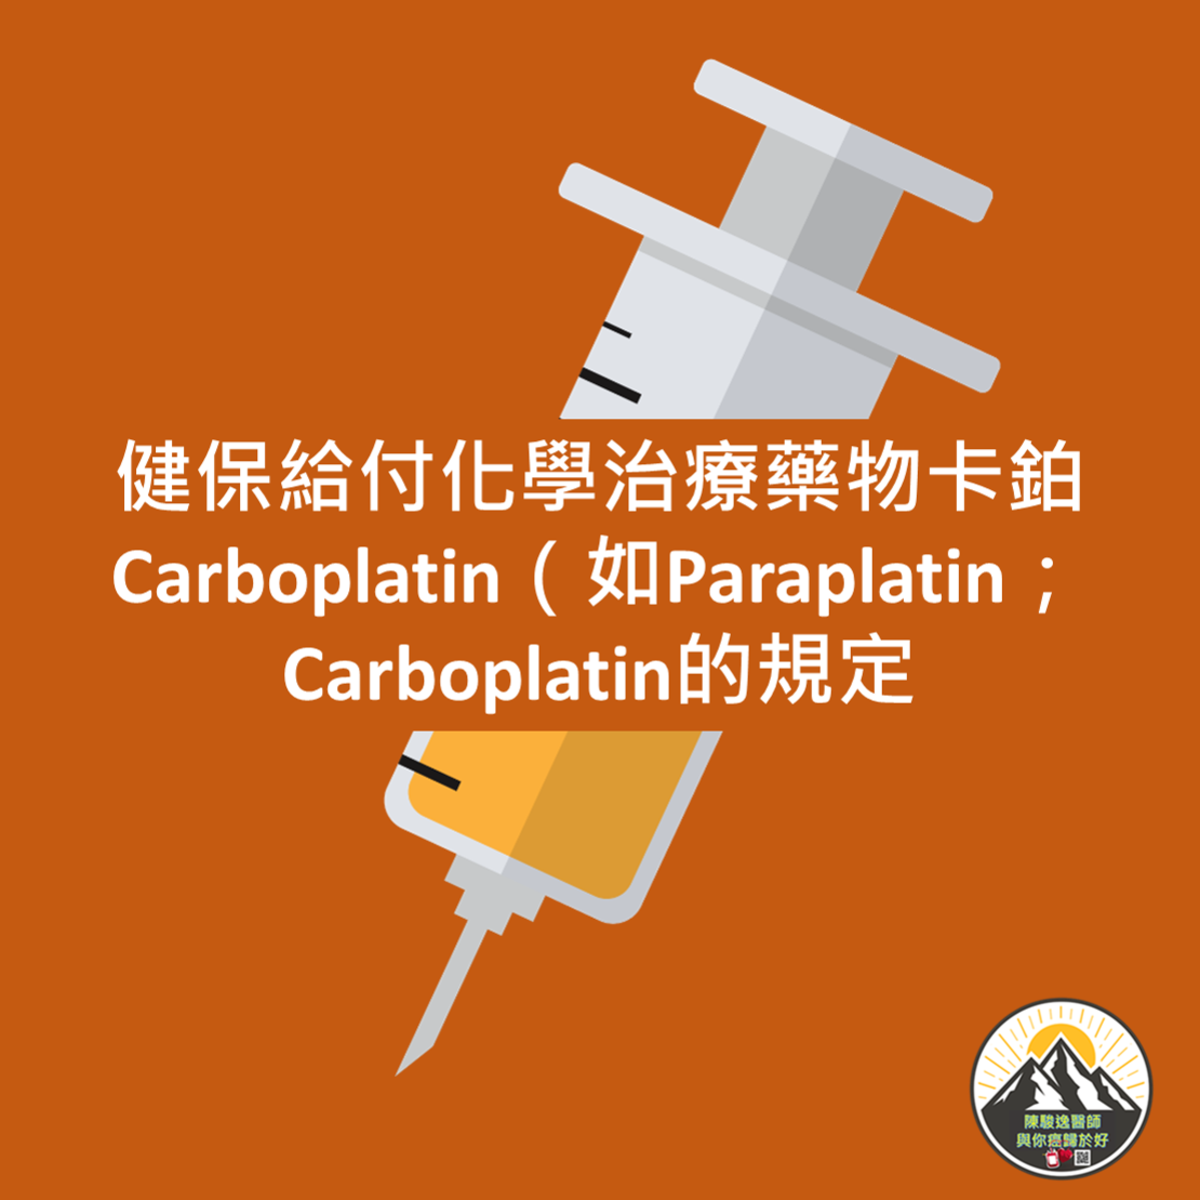 健保給付化學治療藥物卡鉑Carboplatin（如Paraplatin；Carboplatin的規定